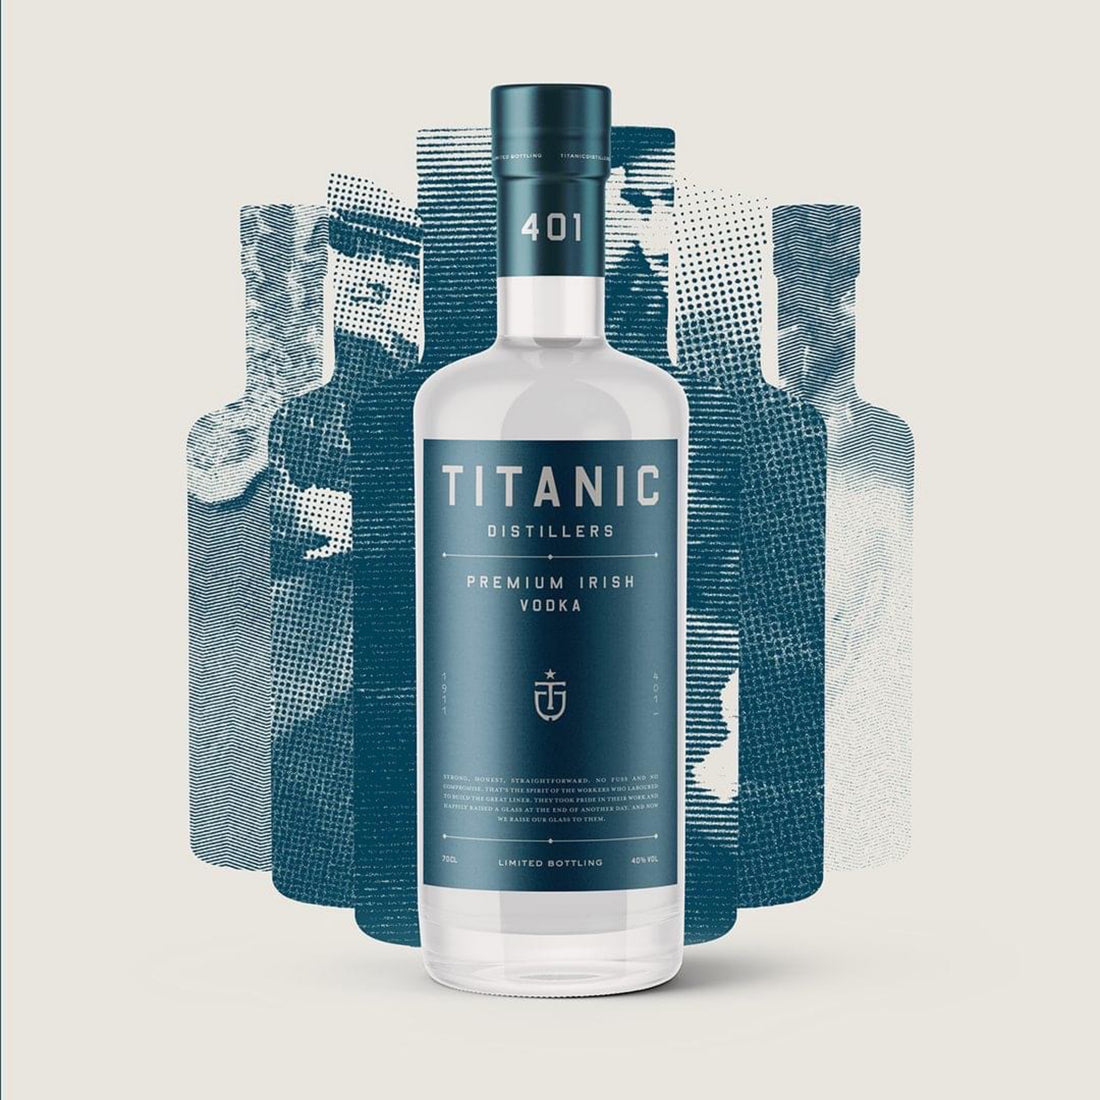 Titanic Distillers unveils new Irish vodka distilled using the finest hand-picked Irish sugar beet